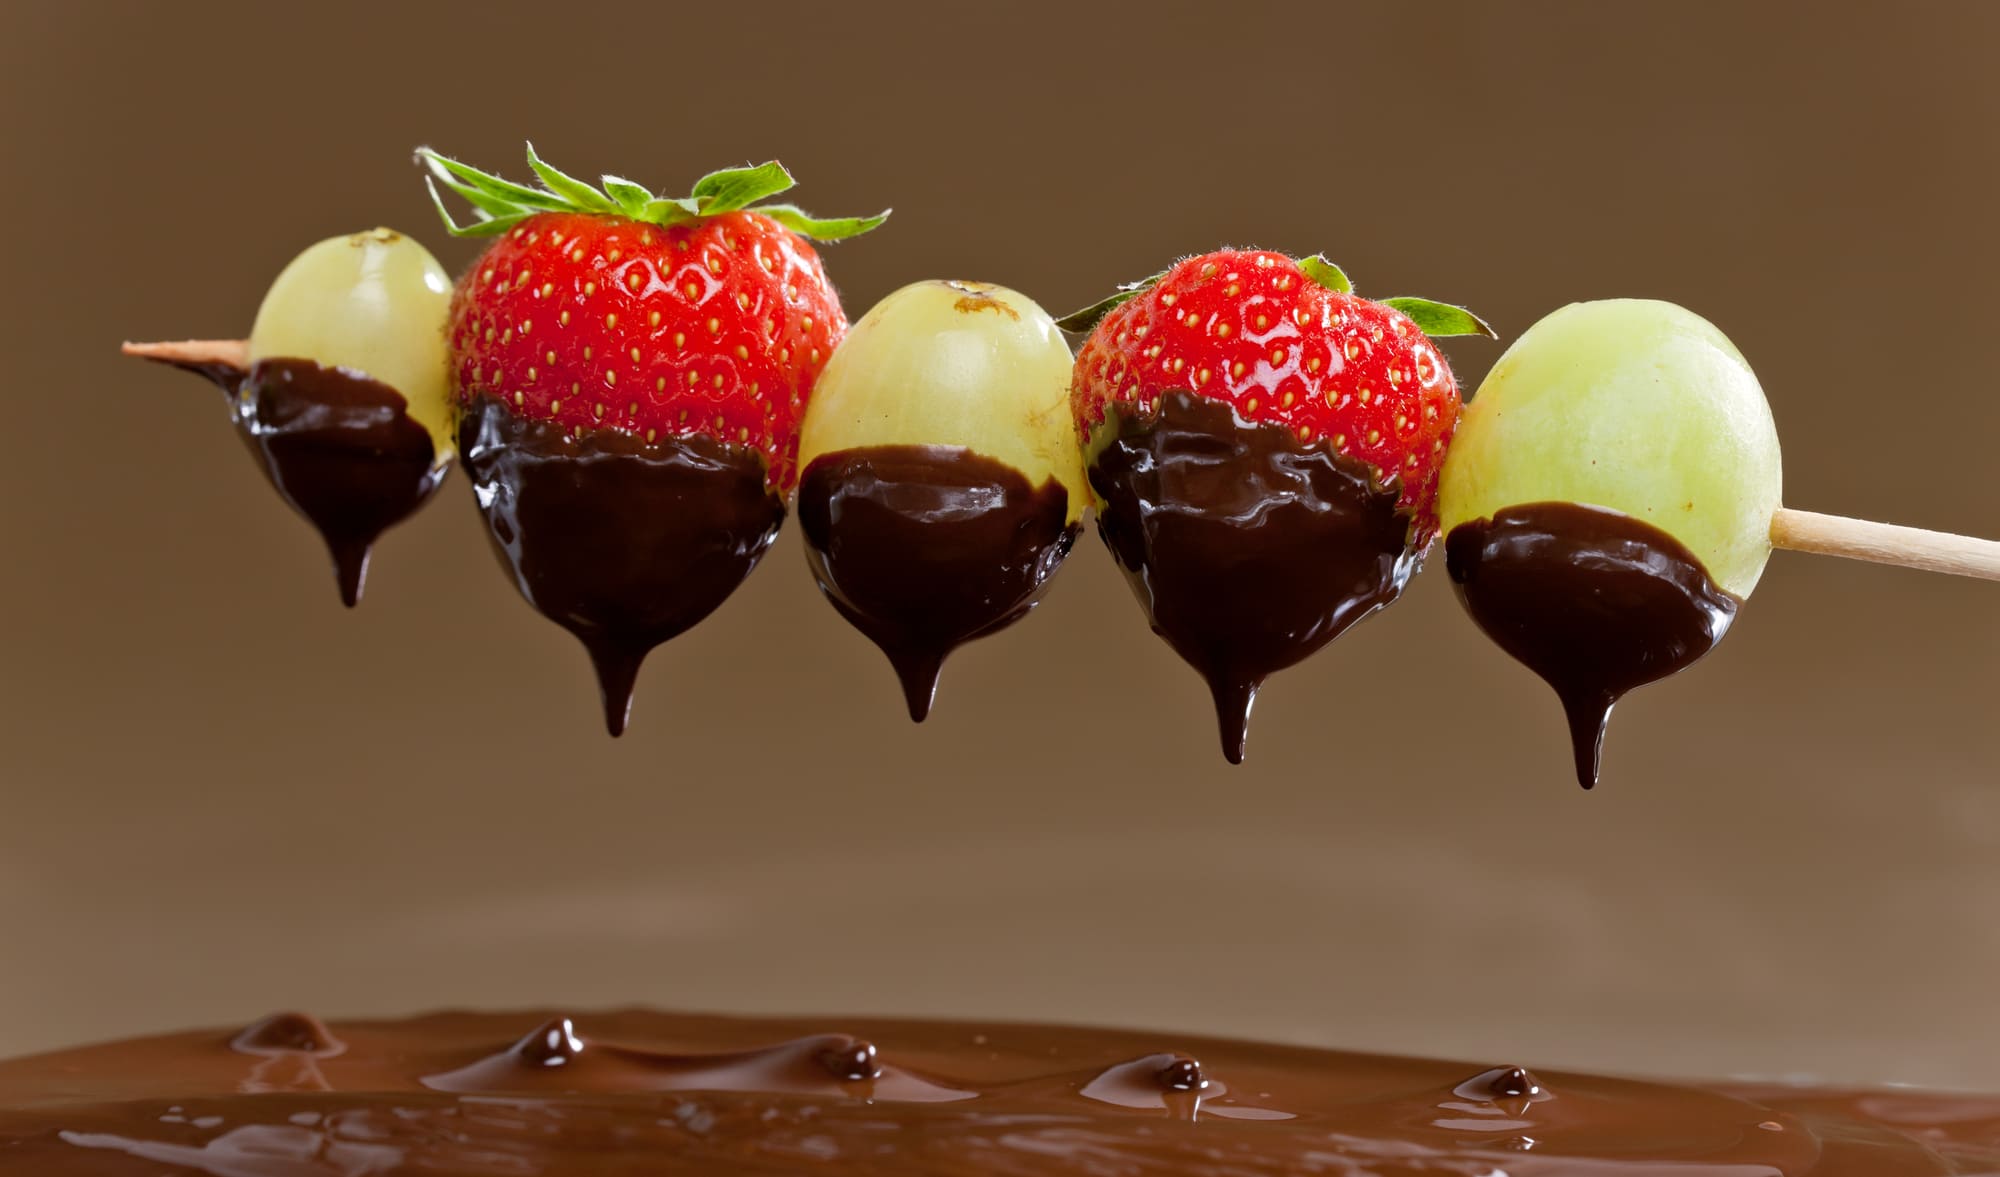 Fondue de chocolate: Receta, frutas y hacerla con niños